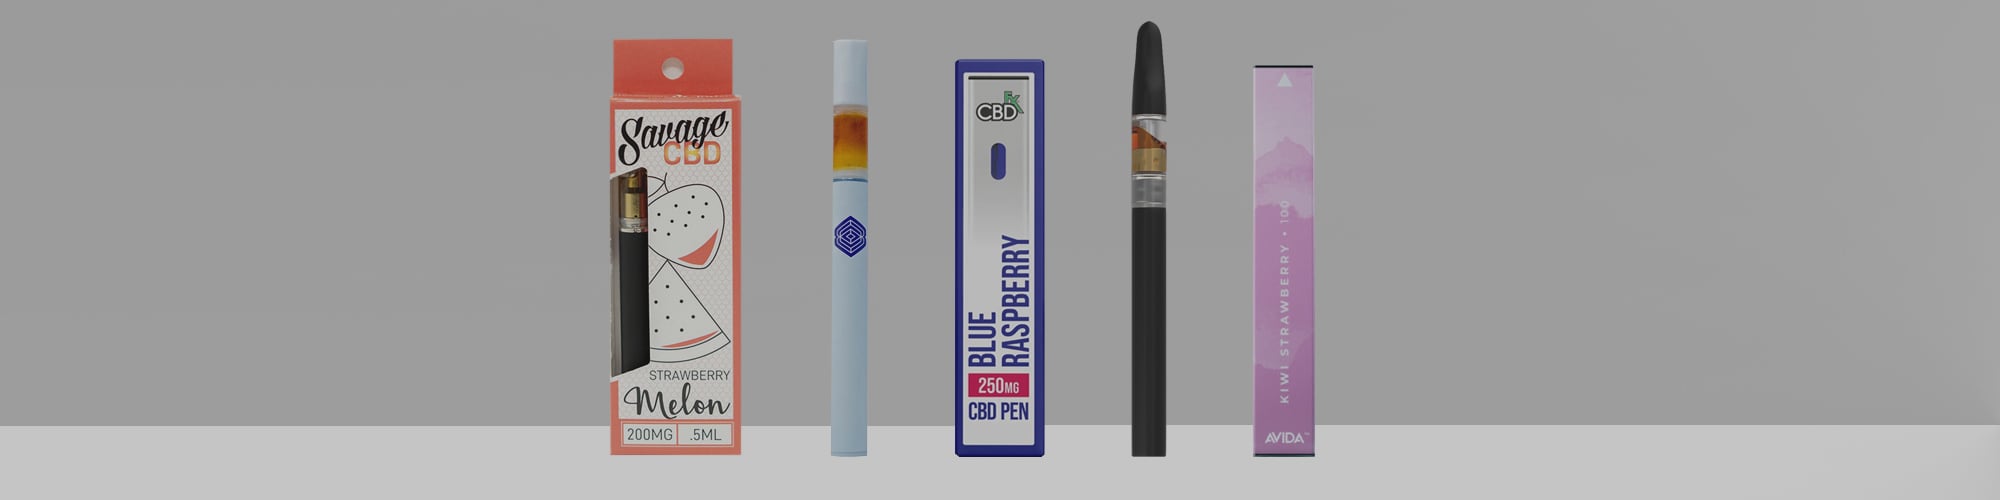 Best CBD Vape Pens Main Banner Updated 2